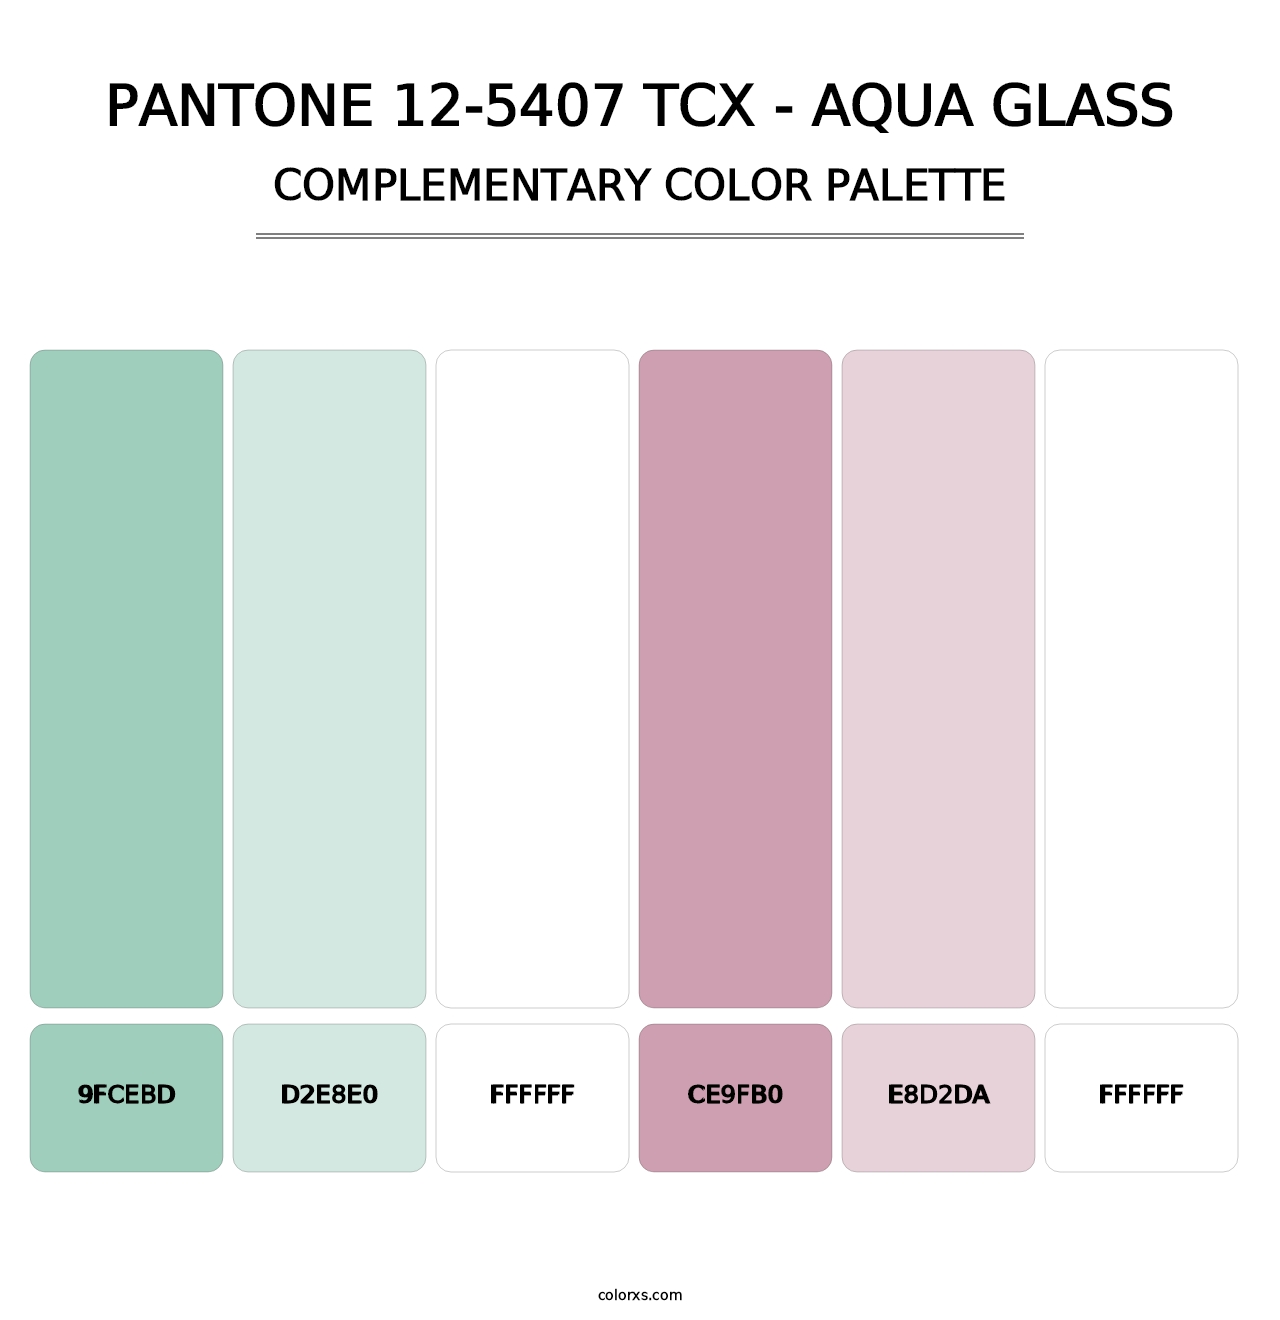 PANTONE 12-5407 TCX - Aqua Glass - Complementary Color Palette